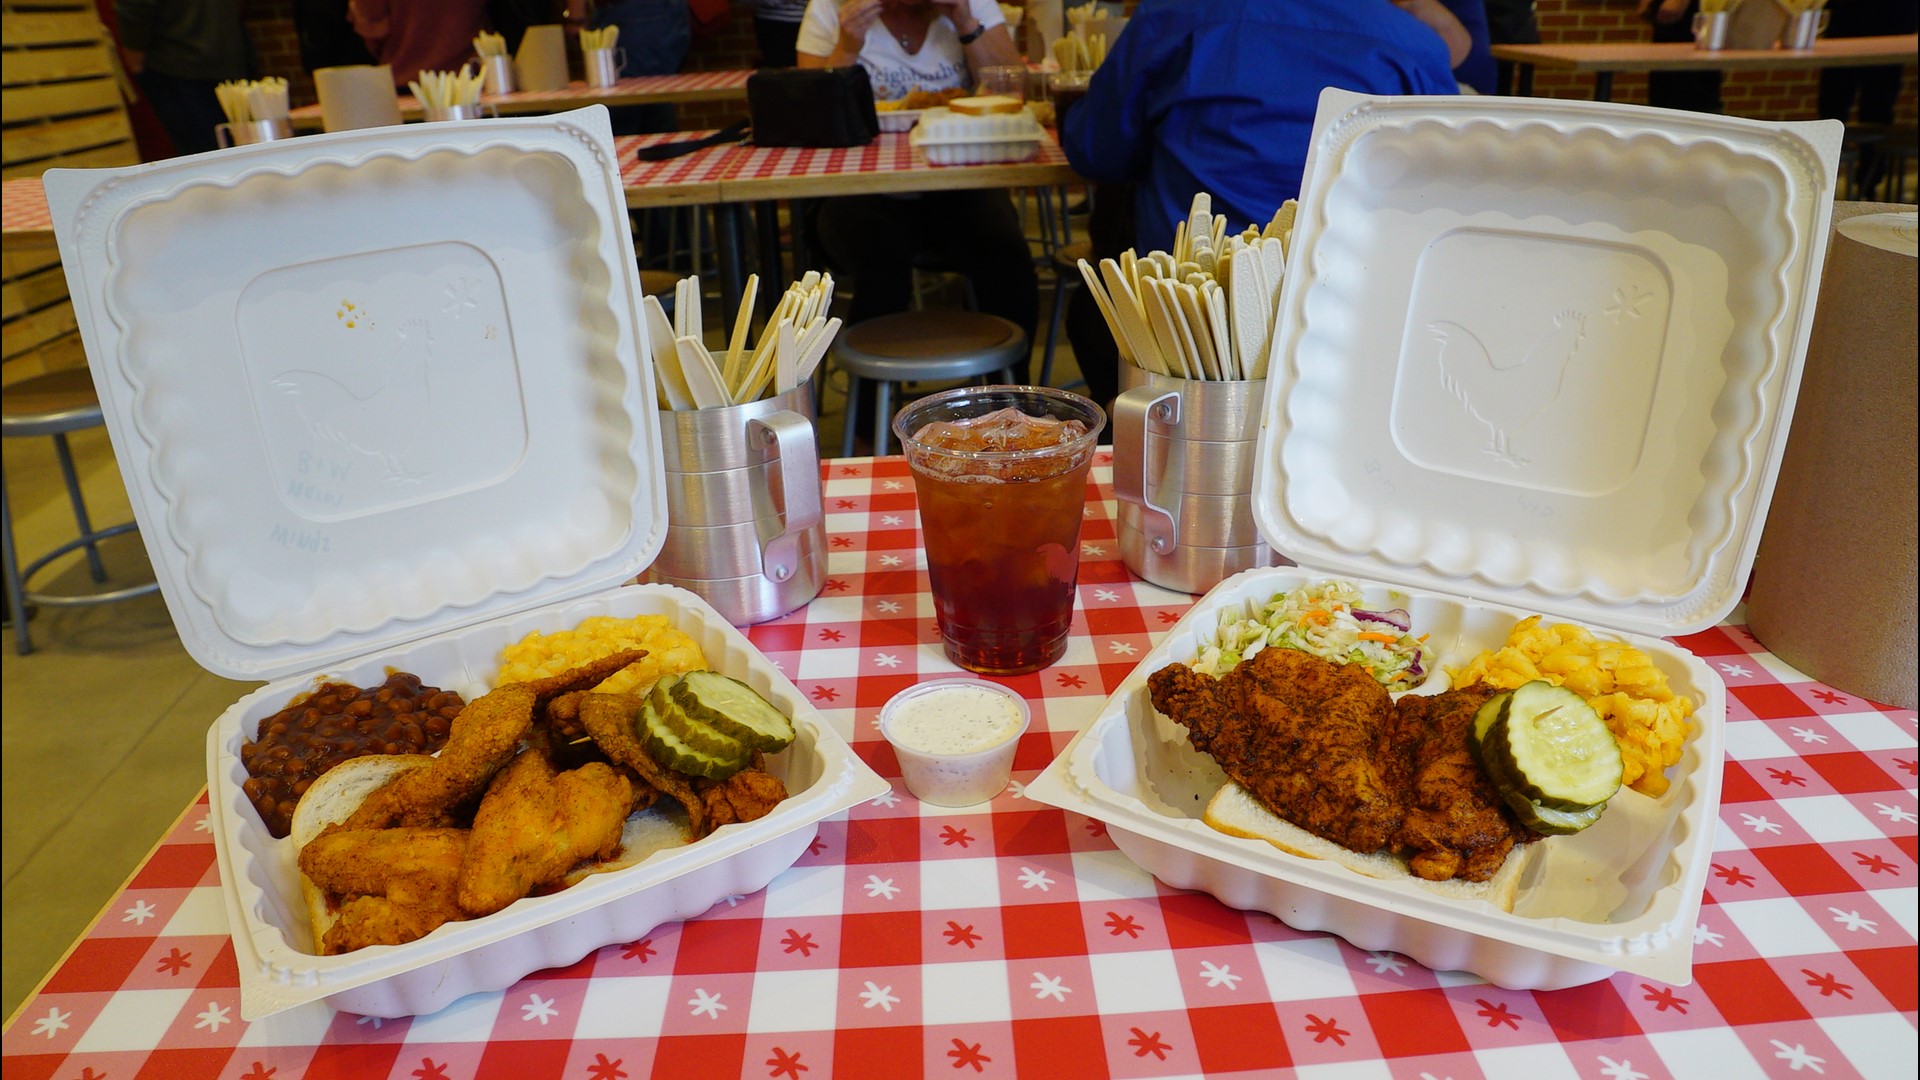 Hot Chicken Takeover brings Nashville taste to Crocker Park in Westlake OH